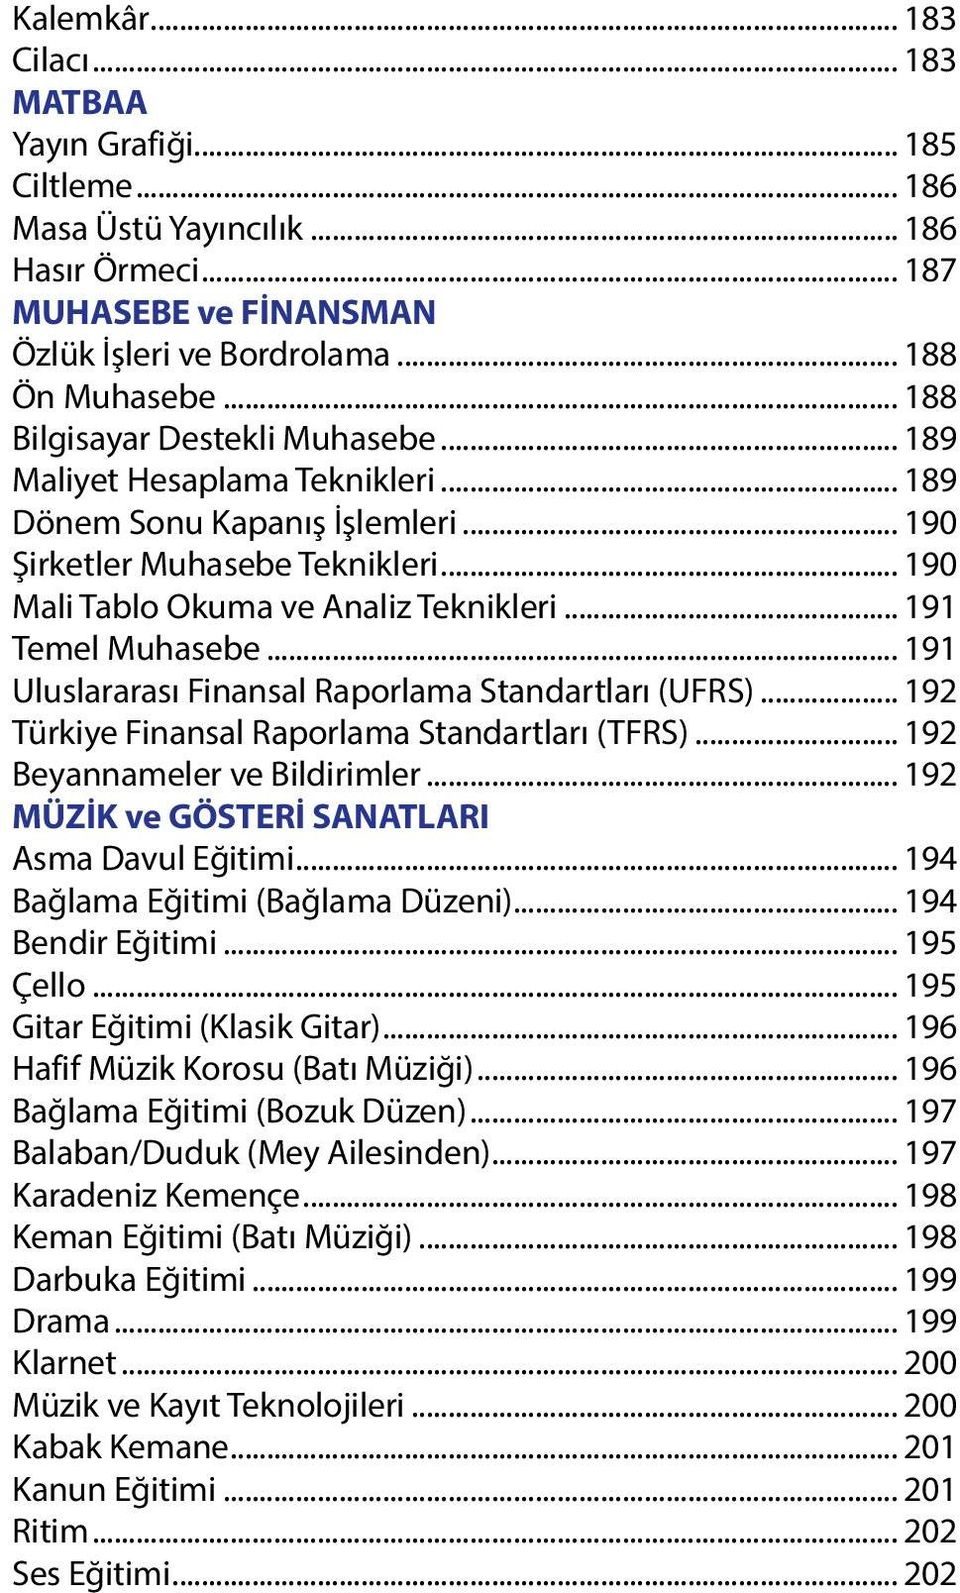 .. 191 Temel Muhasebe... 191 Uluslararası Finansal Raporlama Standartları (UFRS)... 192 Türkiye Finansal Raporlama Standartları (TFRS)... 192 Beyannameler ve Bildirimler.